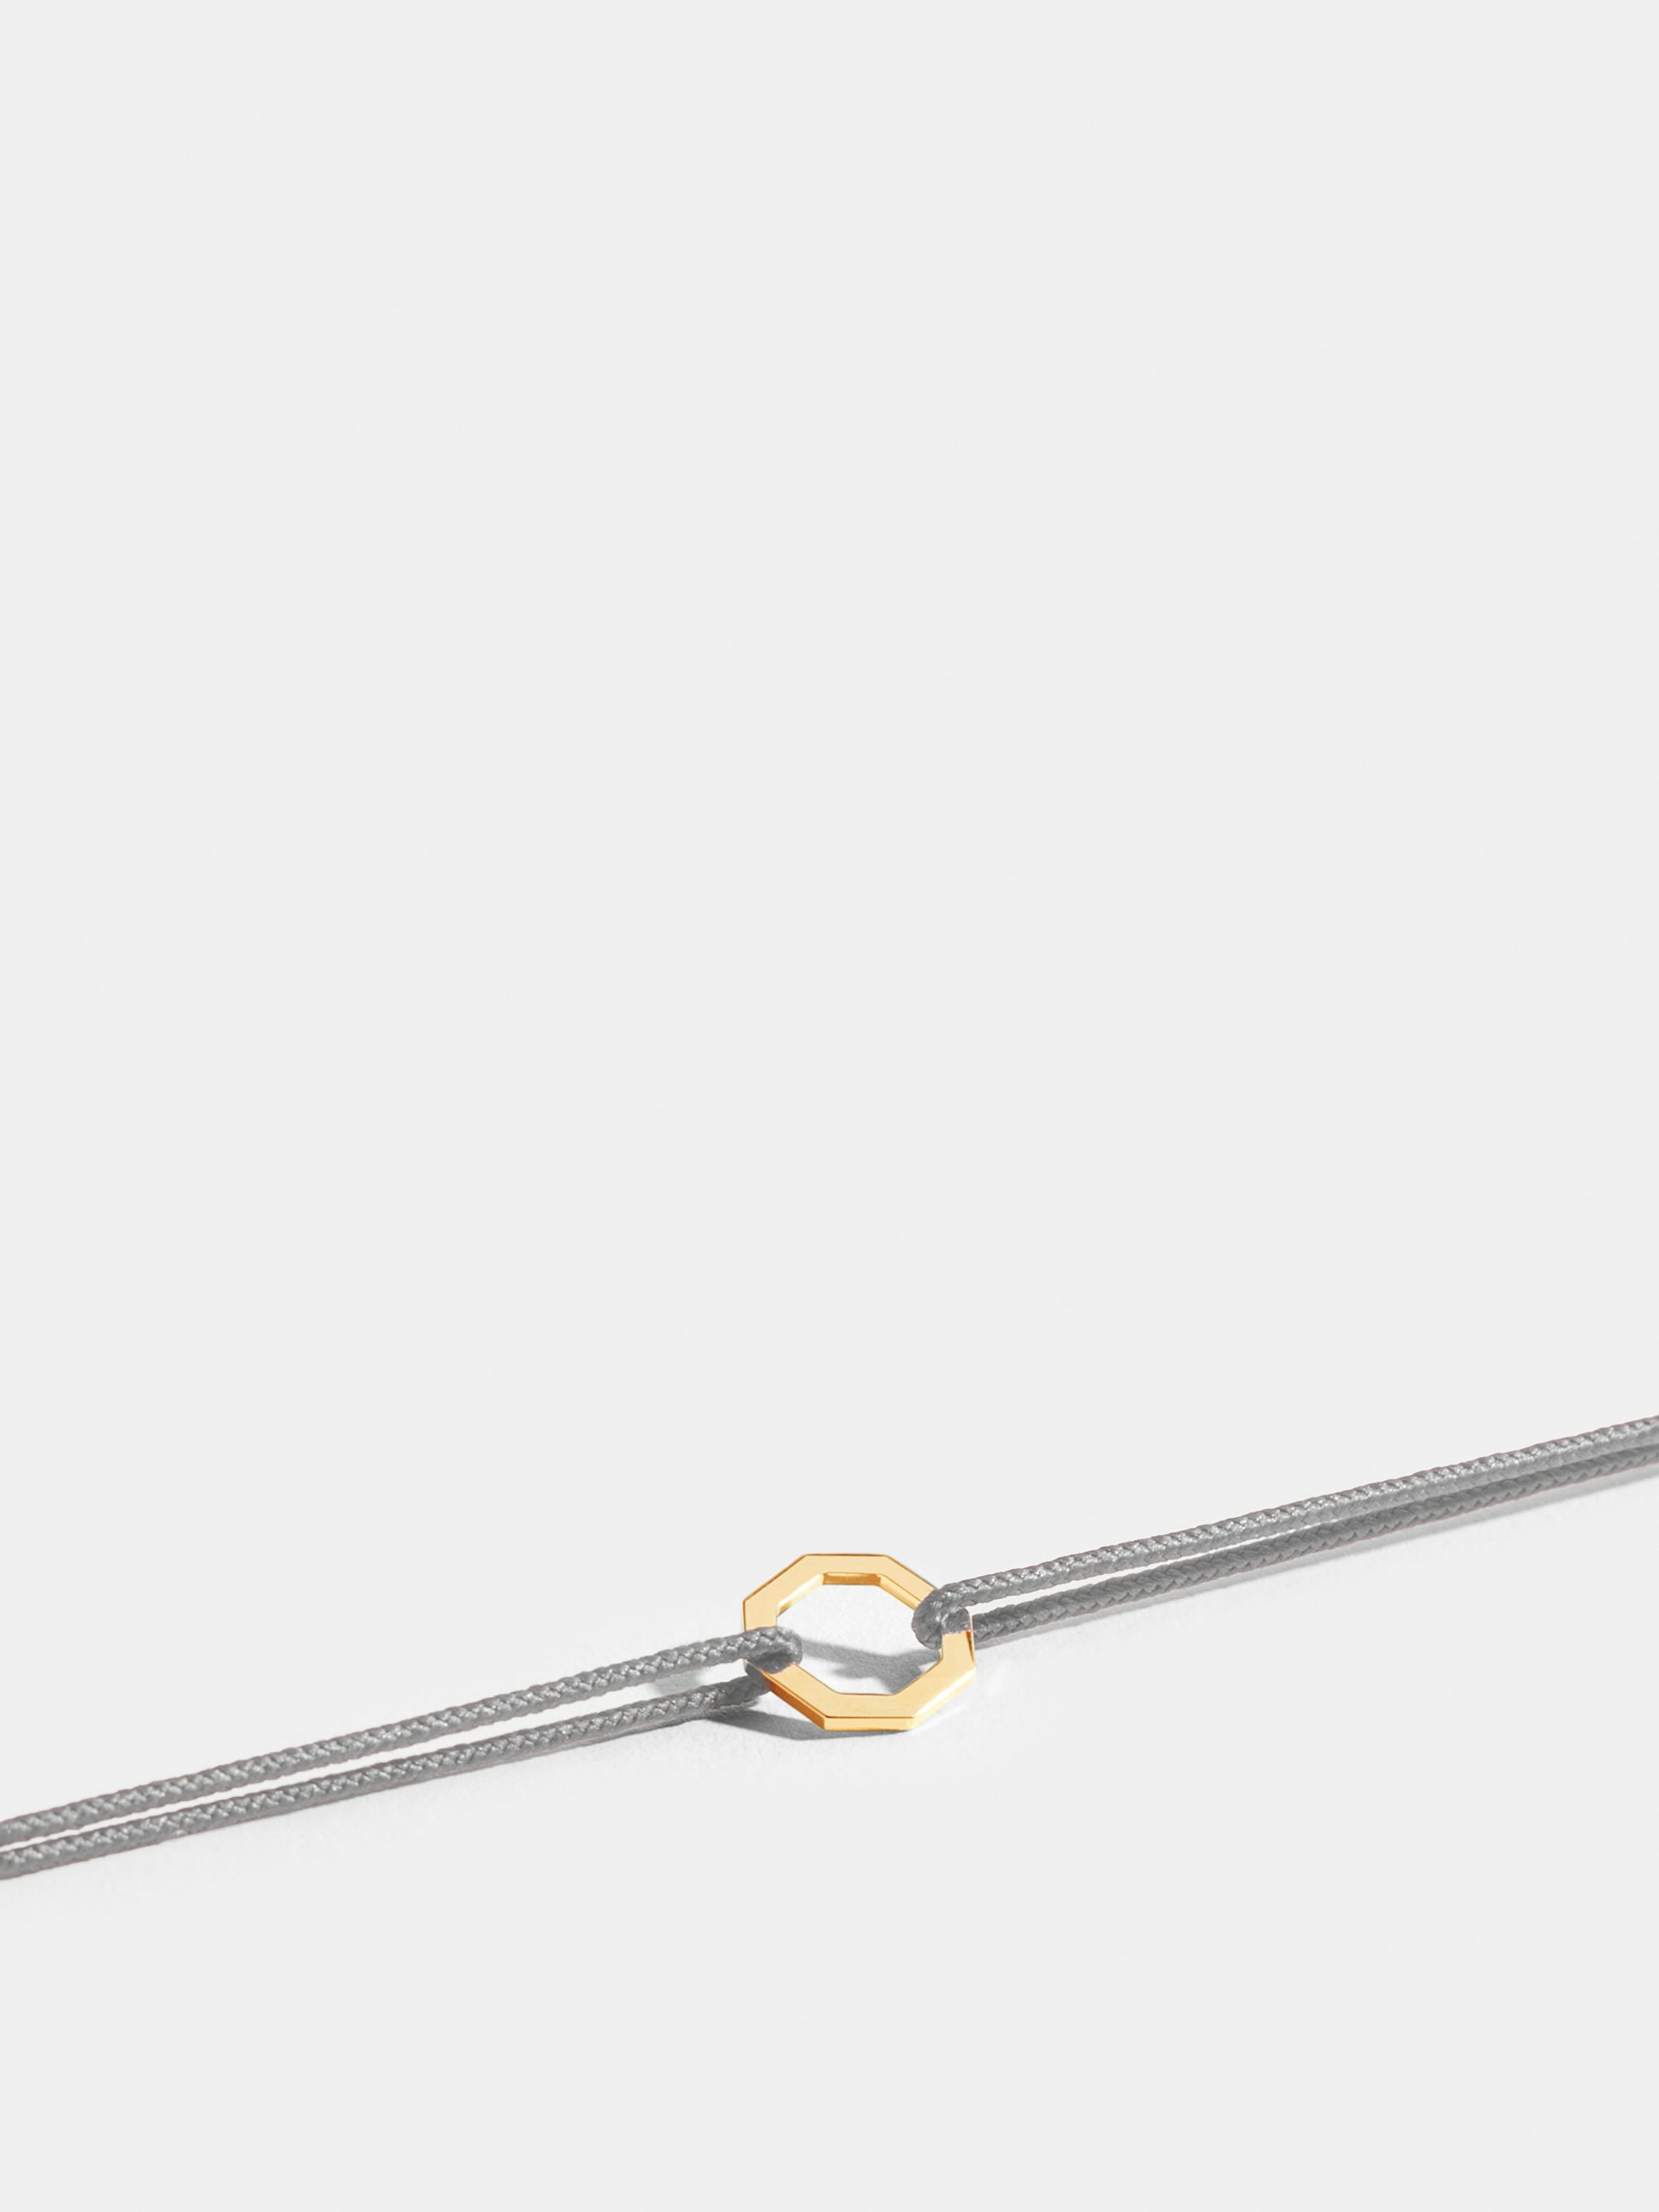 Motif Octogone en Or jaune éthique 18 carats certifié Fairmined, sur cordon gris perlé.